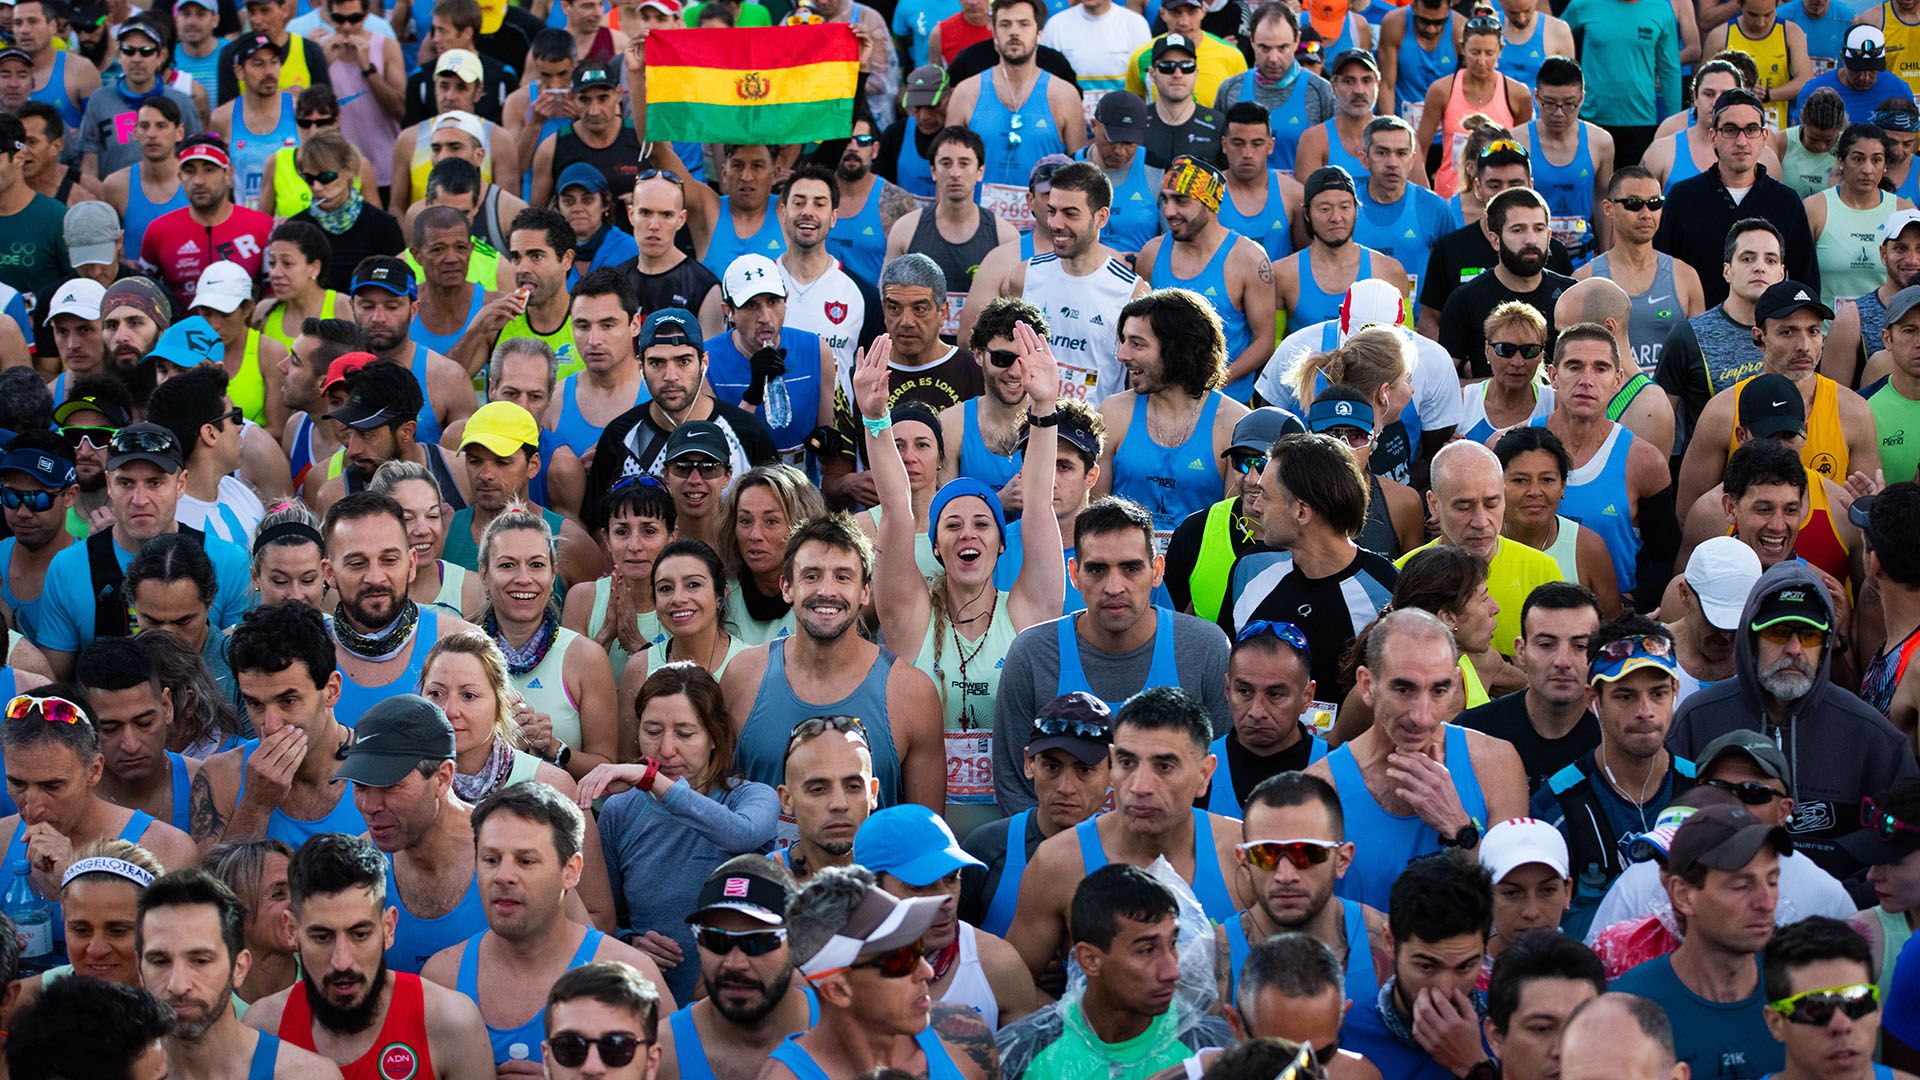 Gente de todas las edades y de diferentes partes del mundo. Los 42k de Buenos Aires representan a un evento único